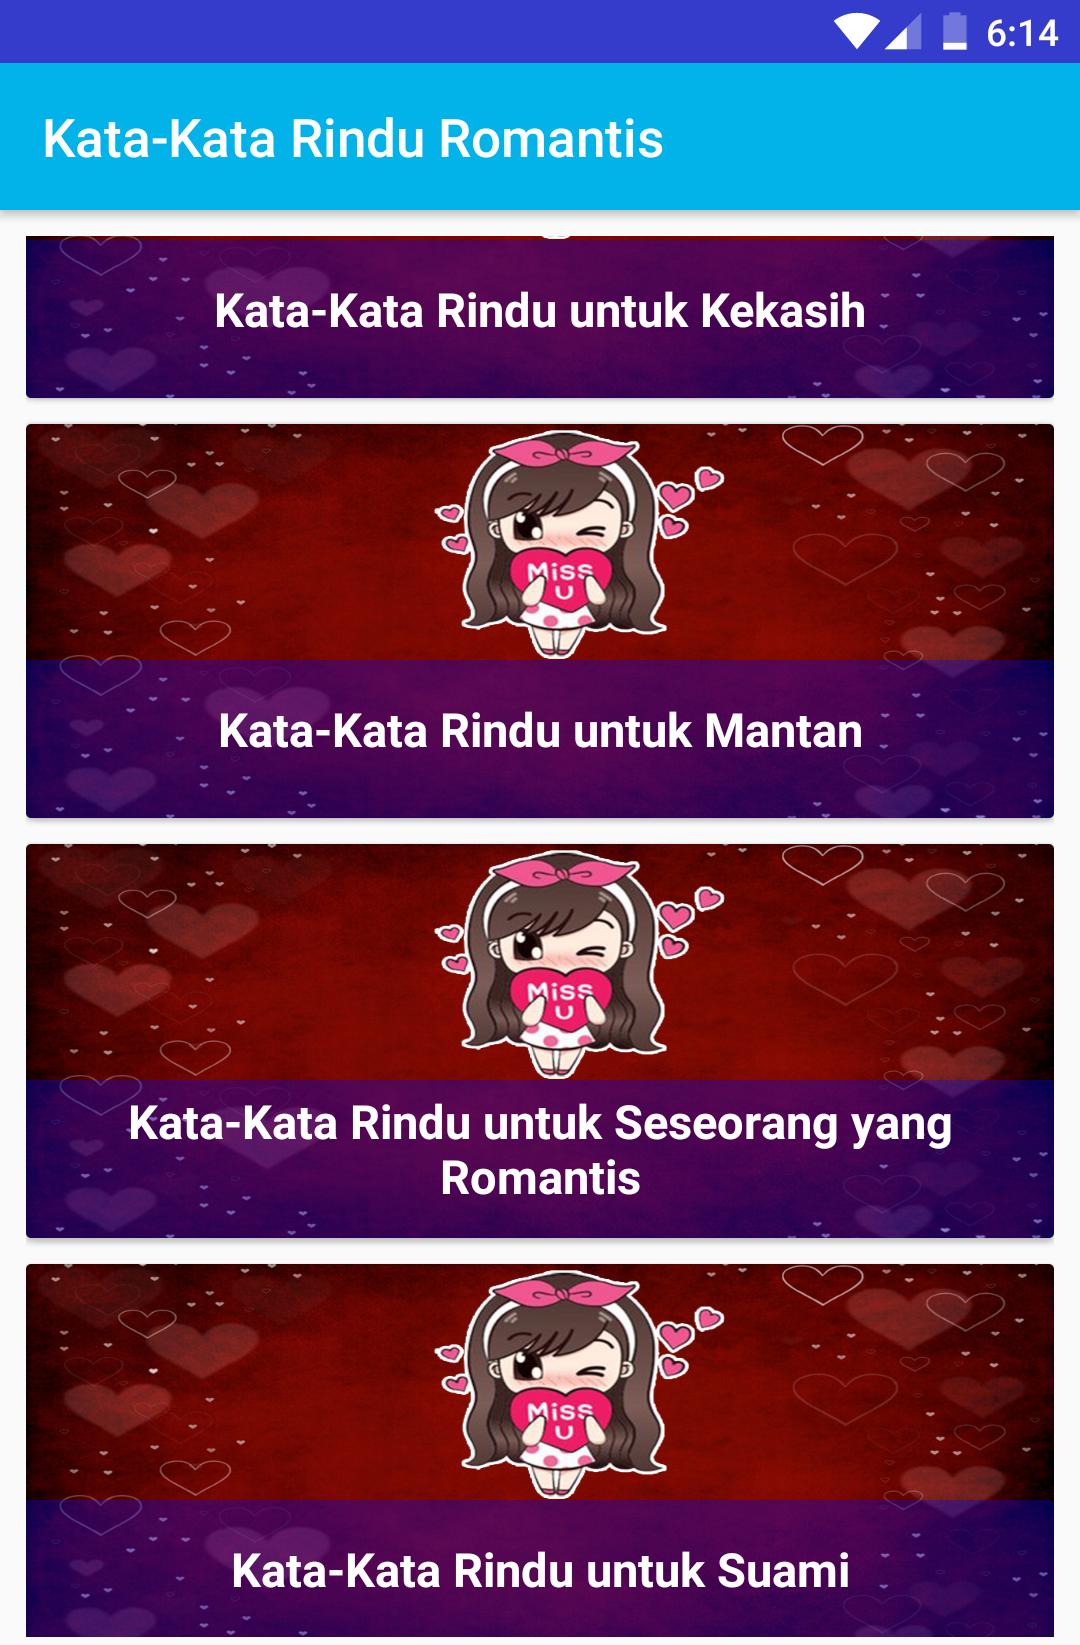 Kata Kata Rindu Romantis For Android Apk Download